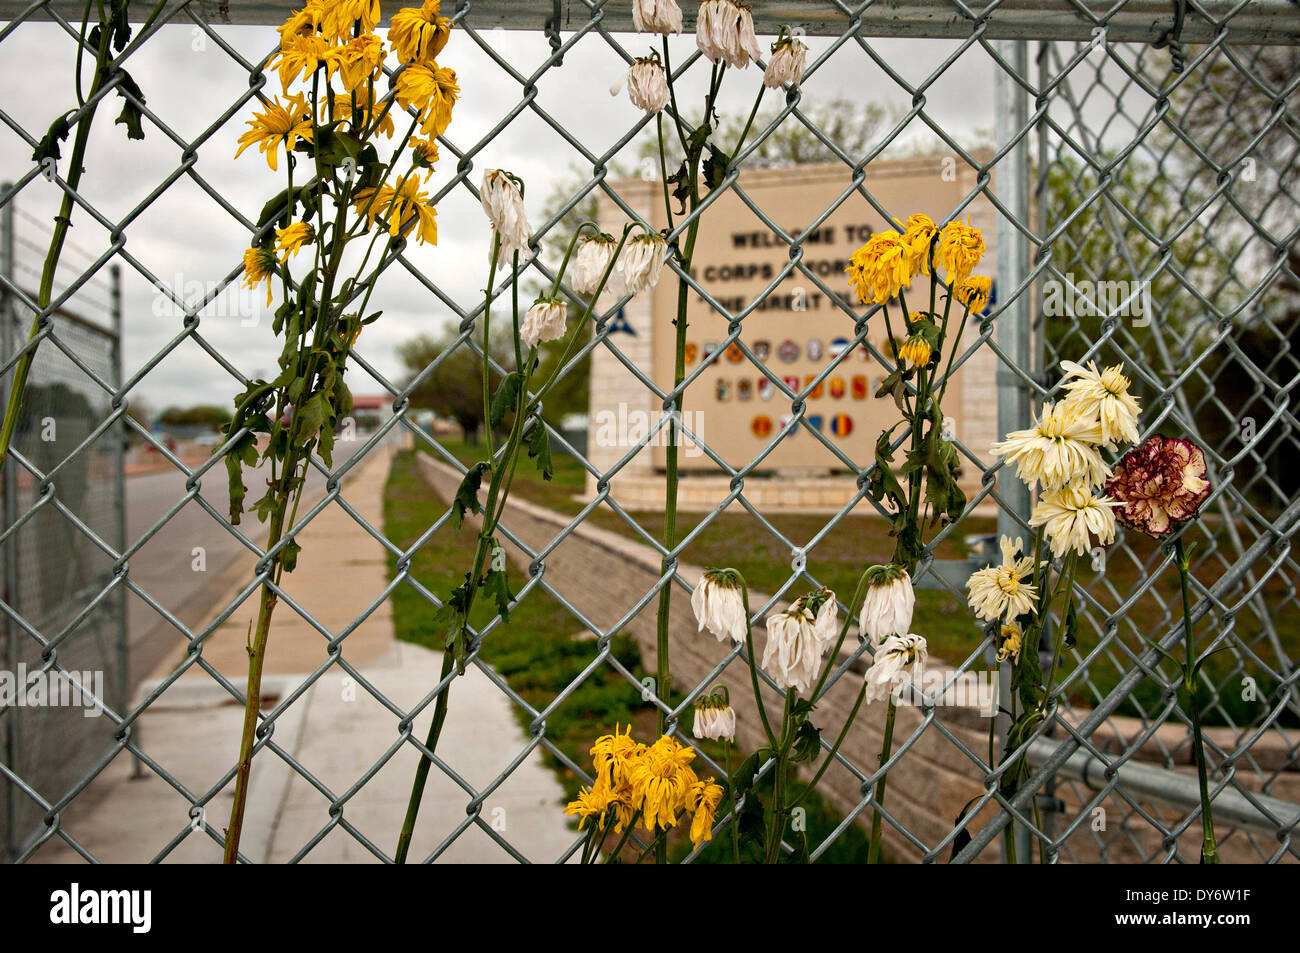 Eine provisorische Gedenkstätte Blumen Hilfe für die Opfer des 2. April schießen neben dem Haupteingang Fort Hood 7. April 2014 in Fort Hood, Texas. Stockfoto